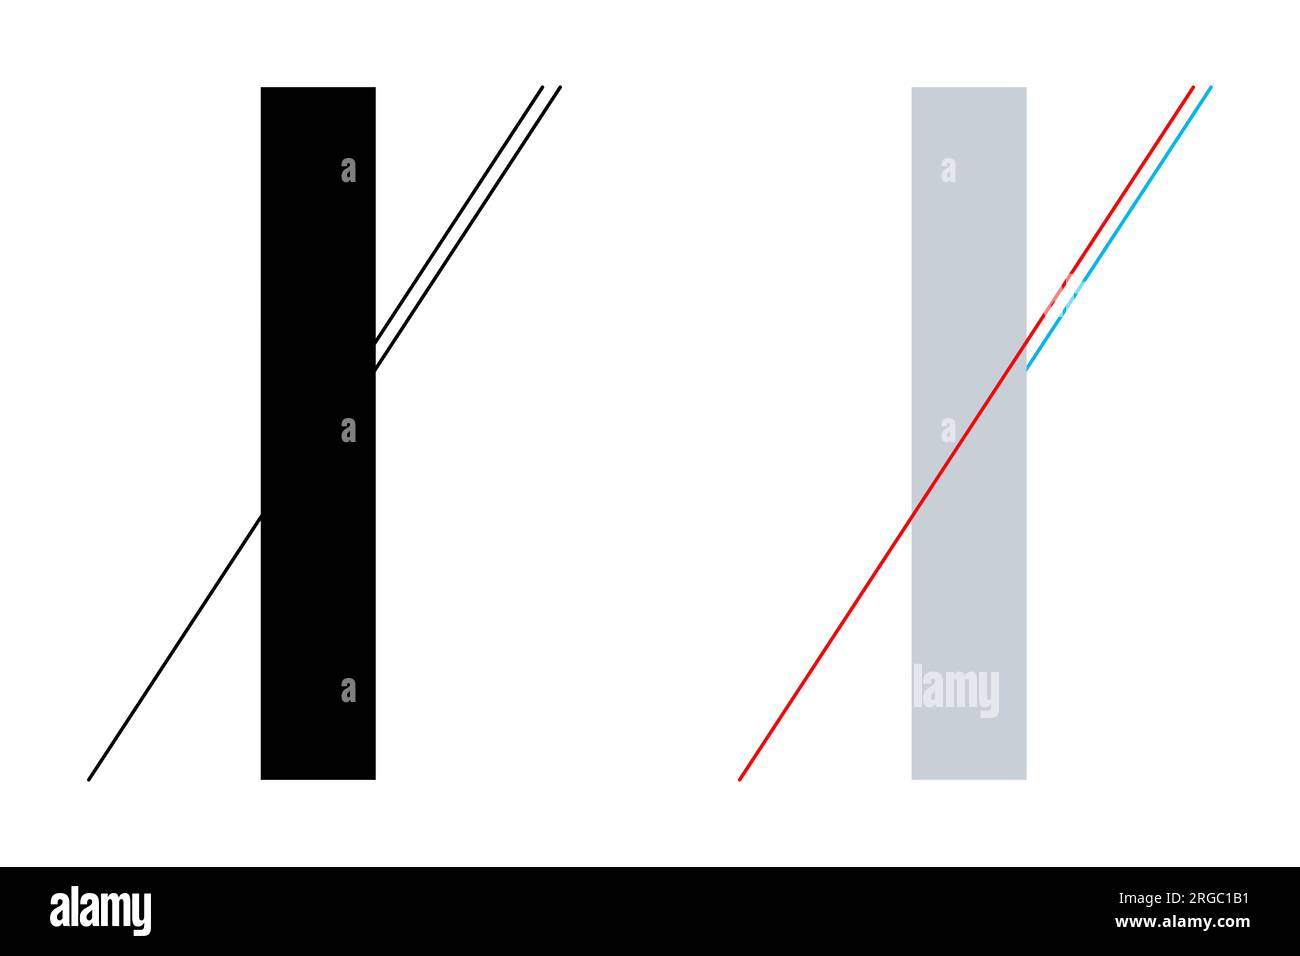 Ilusión óptica geométrica de Poggendorff. La continuación de la línea desde la parte inferior izquierda se confunde con la línea más corta en el lado derecho de abajo. Foto de stock